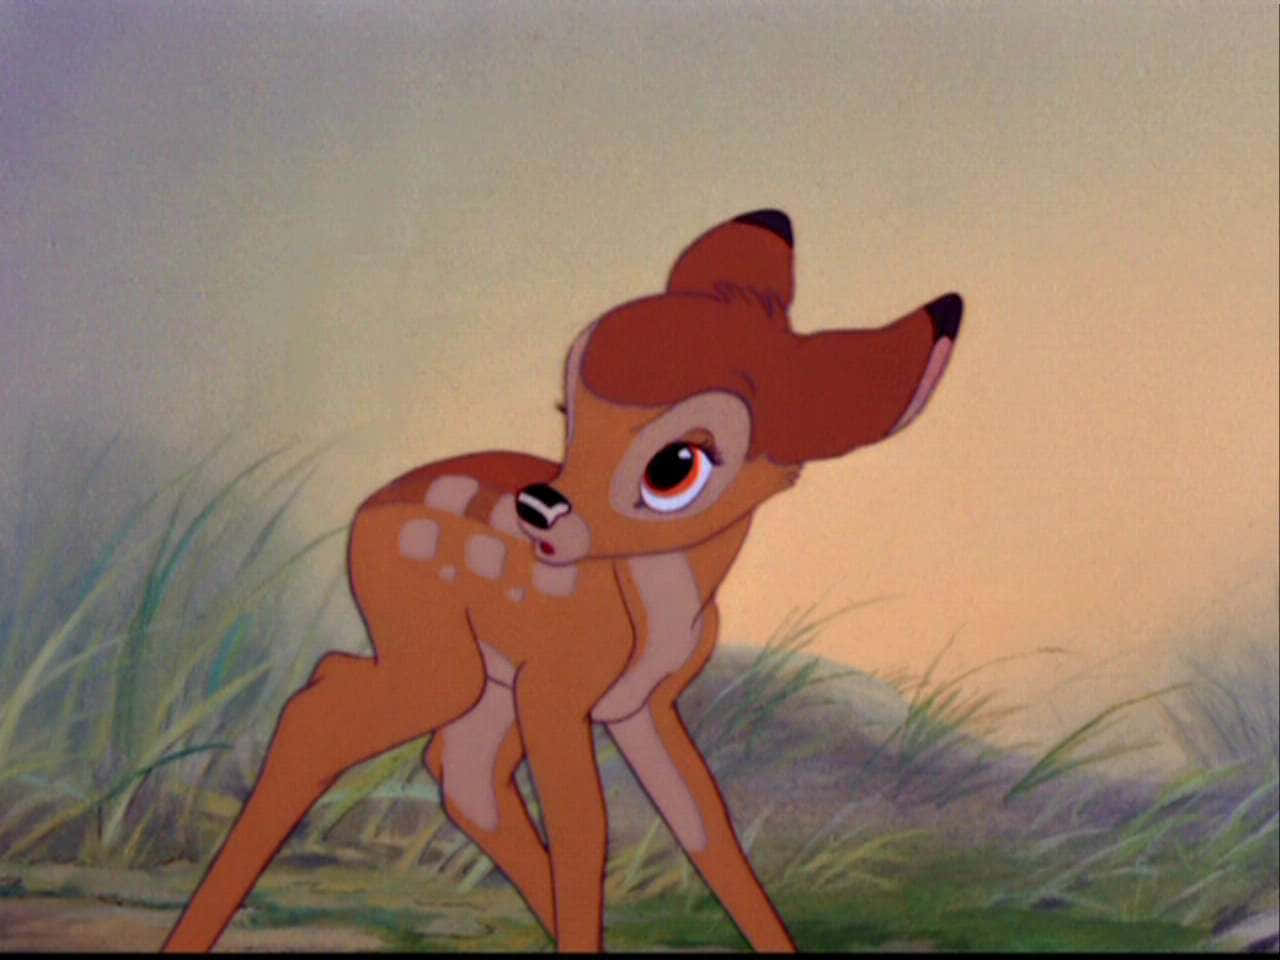 Bambi,ein Ikonischer Charakter Aus Einem Geliebten Klassiker Der Kindheit.